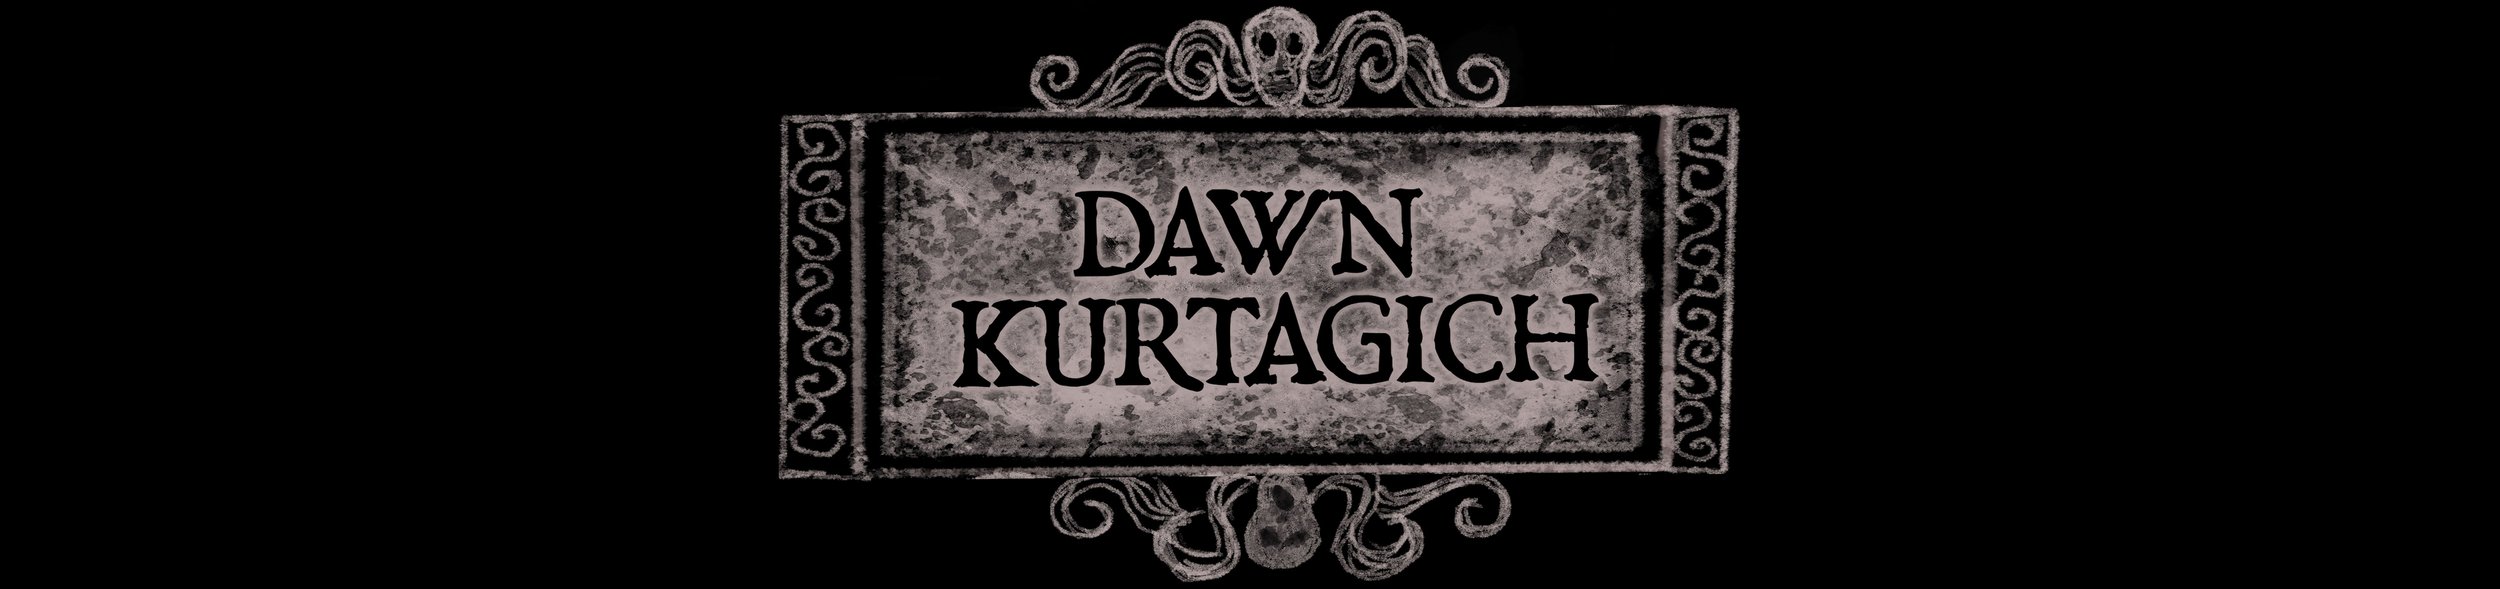 Dawn Kurtagich